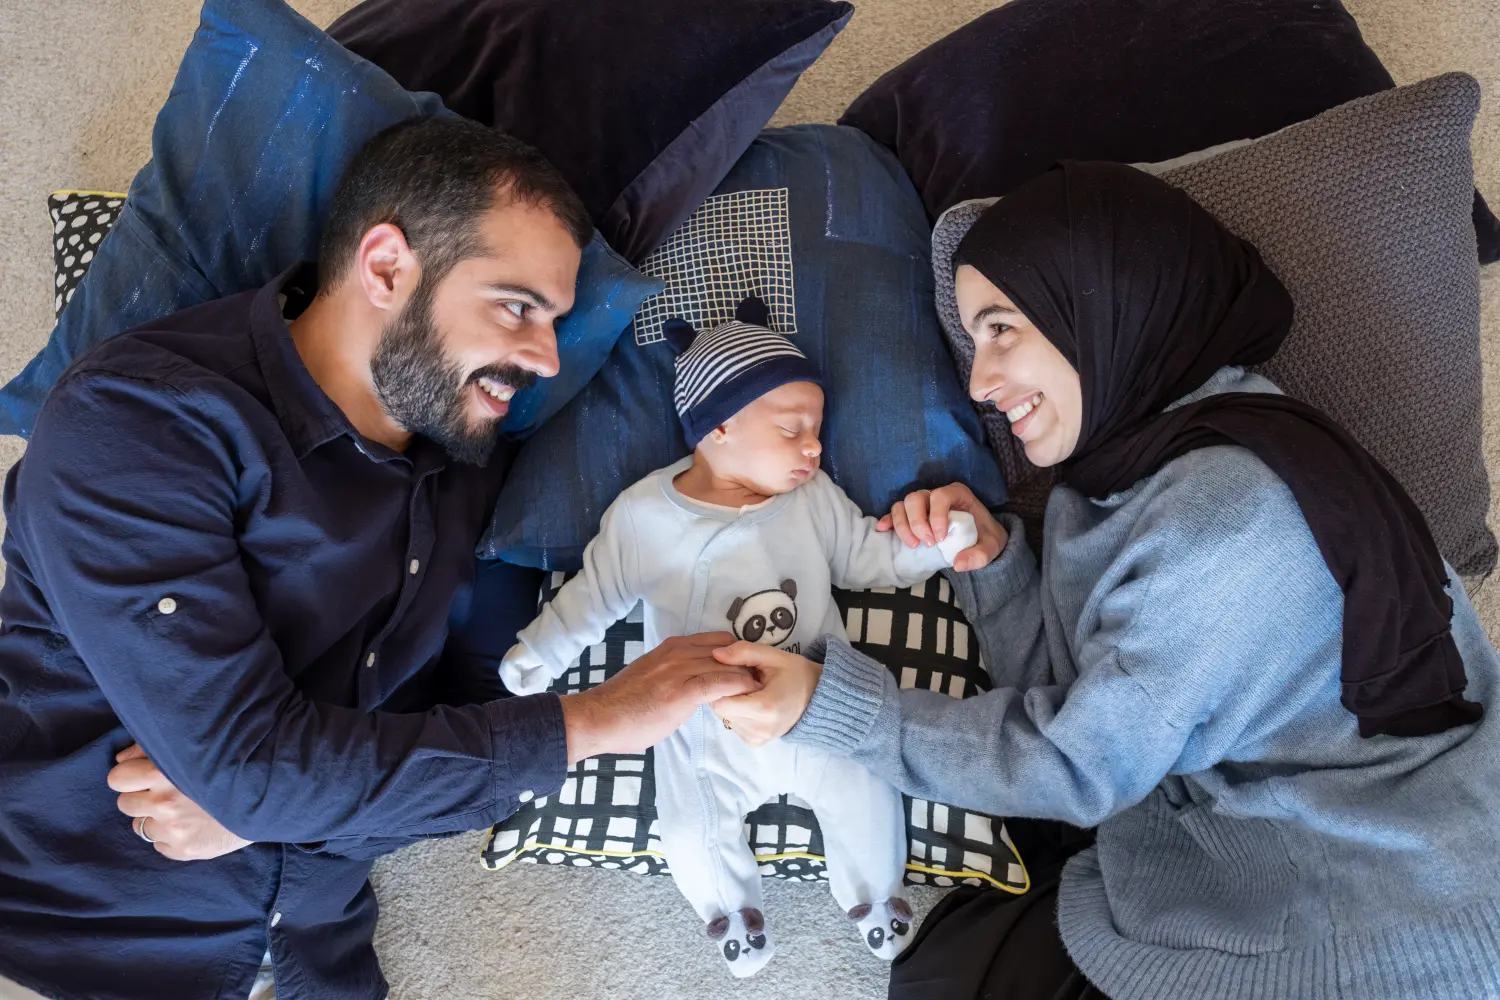 Arabisch-muslimische Eltern teilen einen zärtlichen Moment mit ihrer neugeborenen Tochter und strahlen Liebe und Freude in ihrem Zuhause aus.